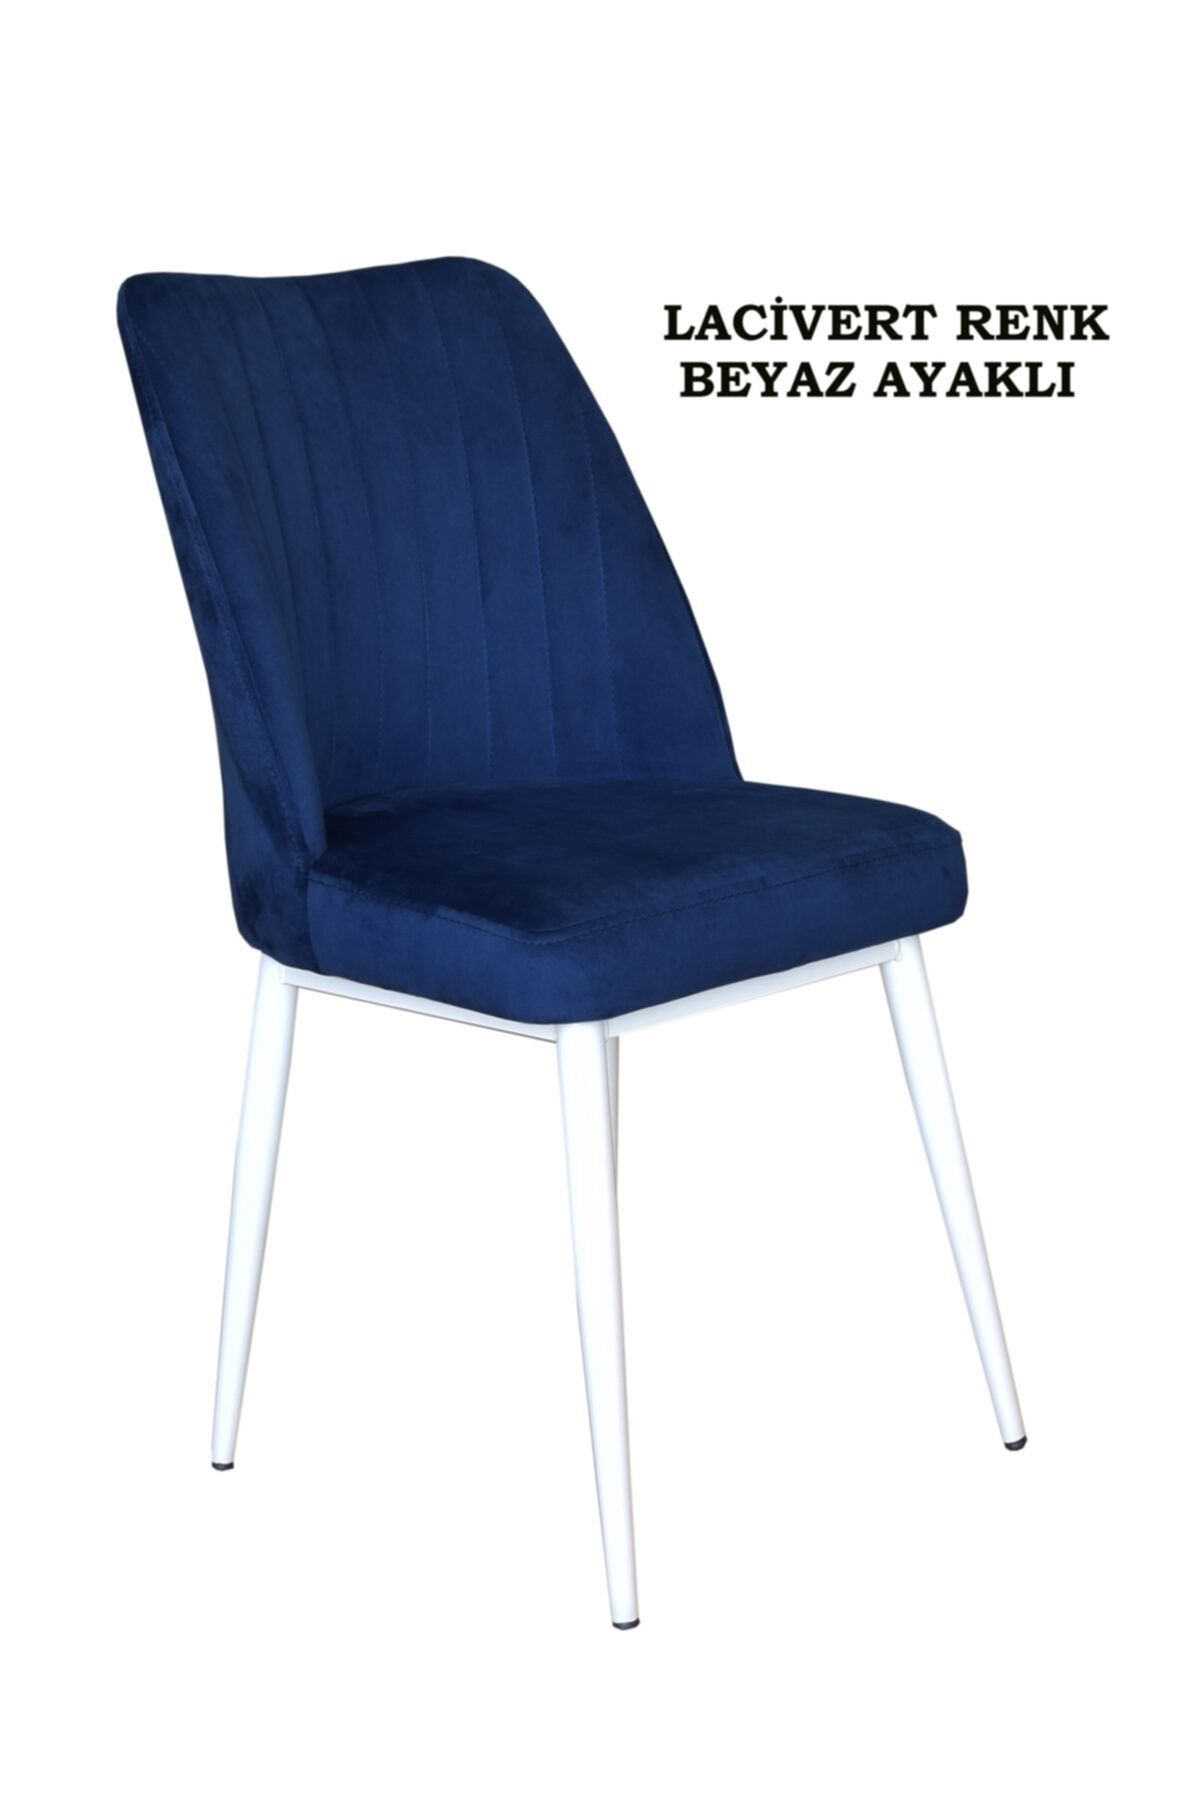 Ankhira Elit Sandalye, Mutfak Ve Salon Sandalyesi, Silinebilir Lacivert Renk Kumaş, Beyaz Ayaklı